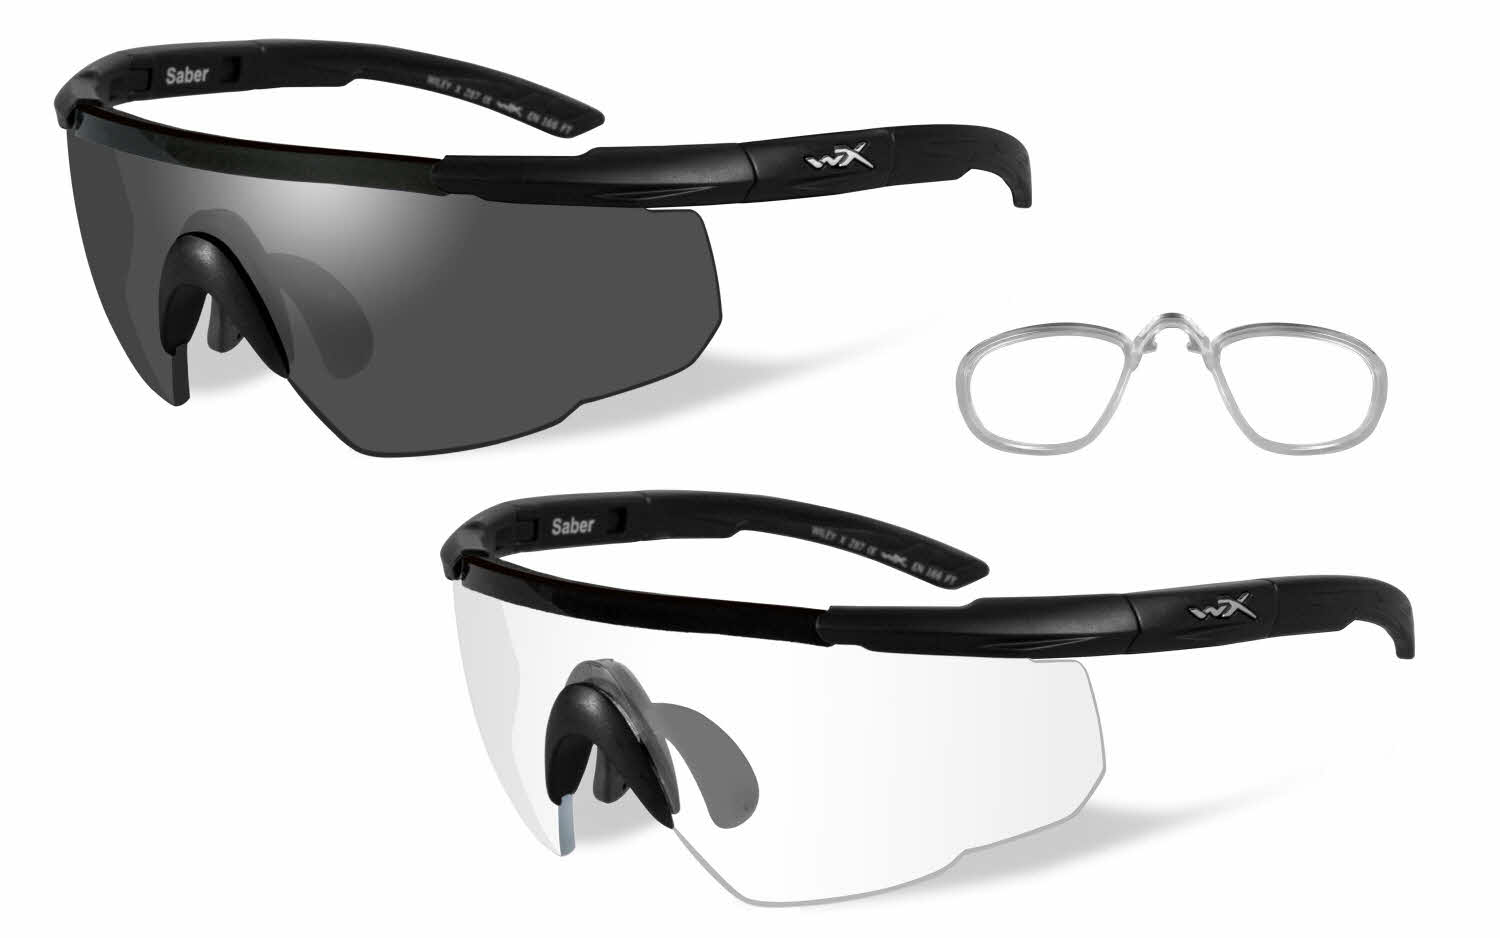 Wiley X Saber Advanced Men's Prescription Sunglasses In Black